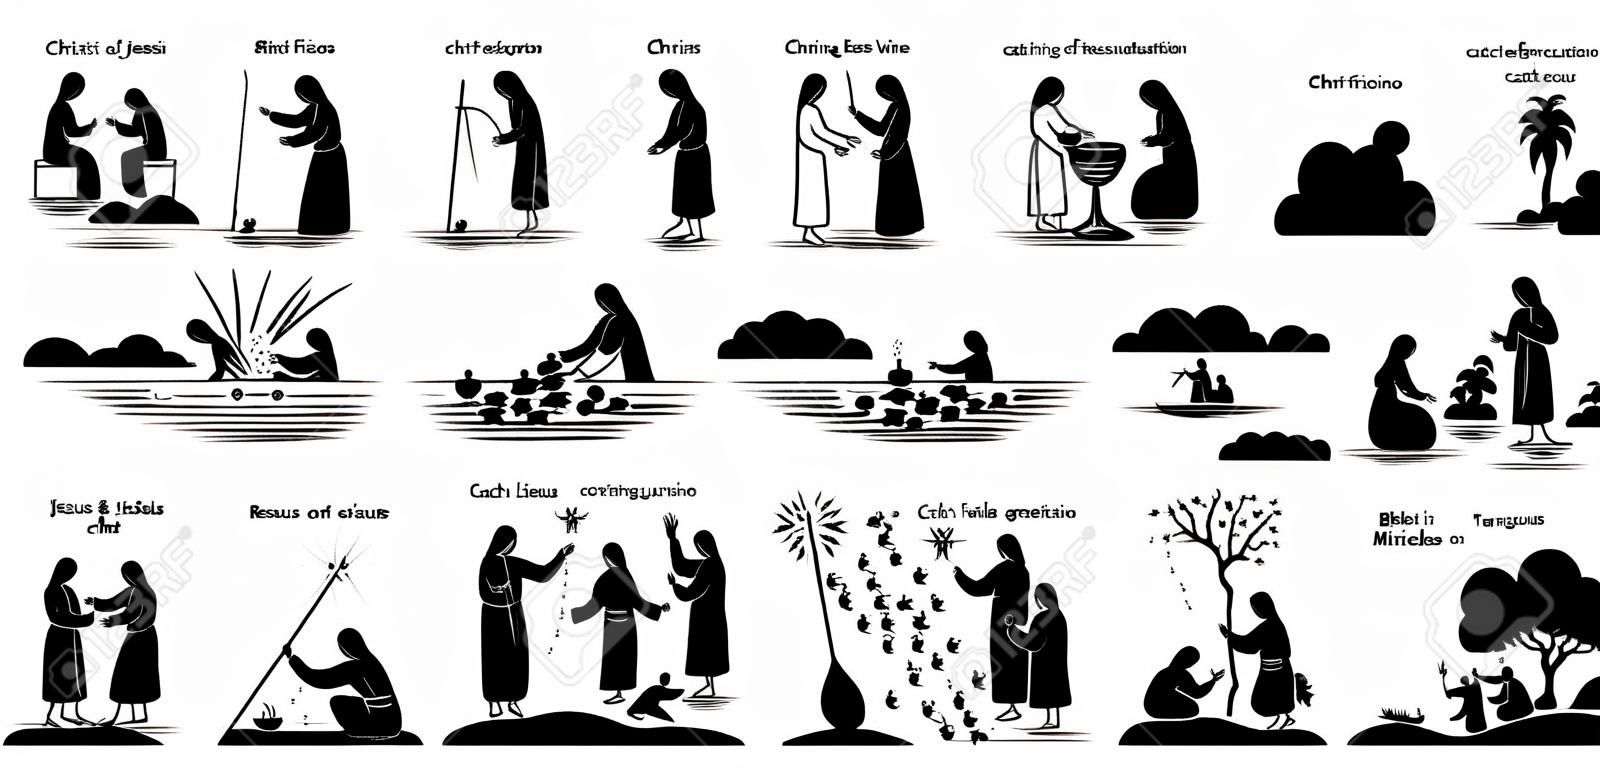 Miracles du pictogramme d'icônes de Jésus-Christ. Stick figure de Jésus-Christ guérissant les aveugles, la femme, transformant l'eau en vin, l'exorcisme, la résurrection, attrapant du poisson, marchant sur l'eau, se nourrissant et transfigurant.